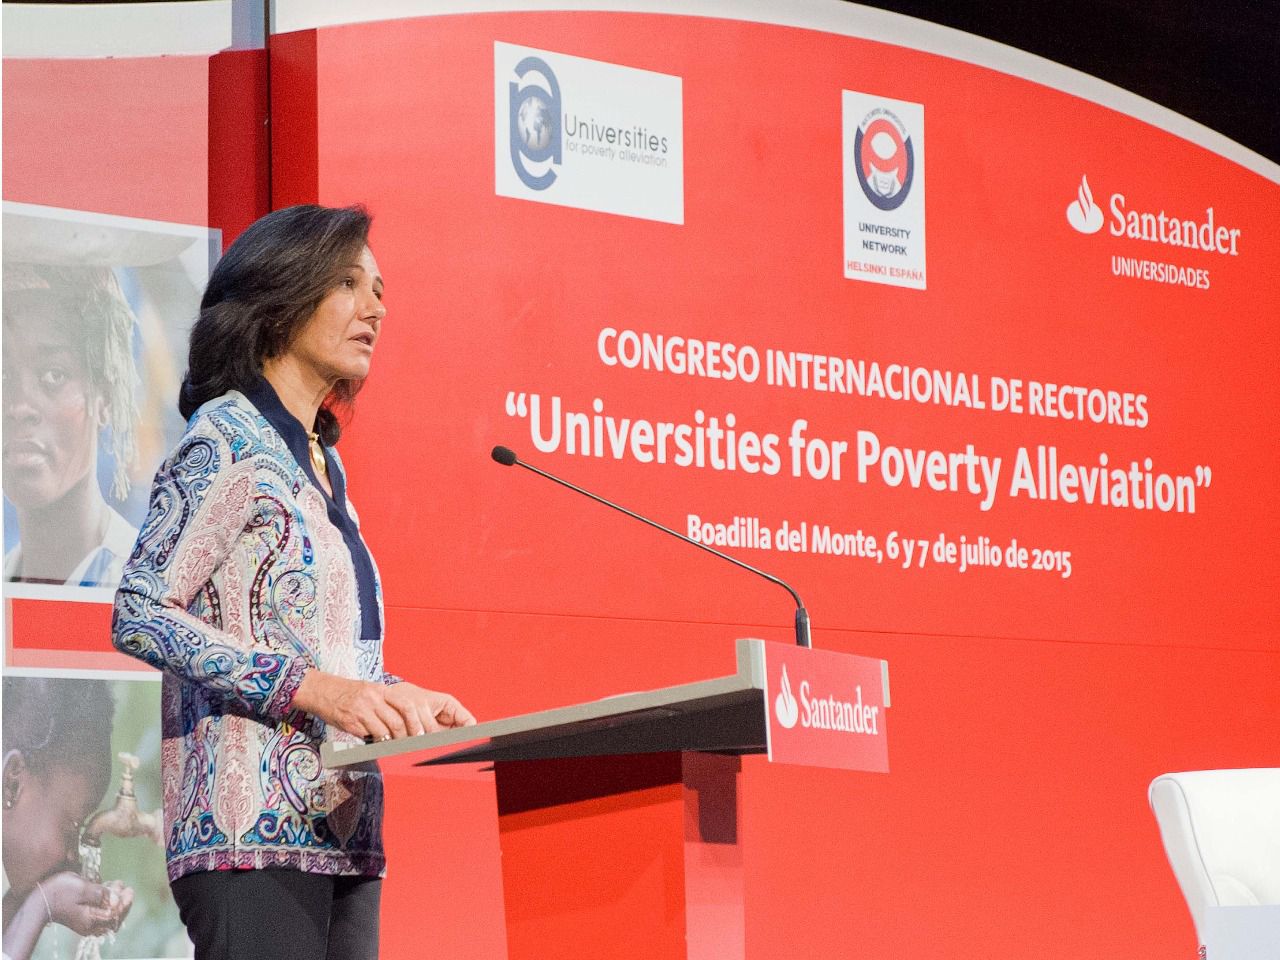 Banco Santander apoya a las universidades en la lucha contra la pobreza